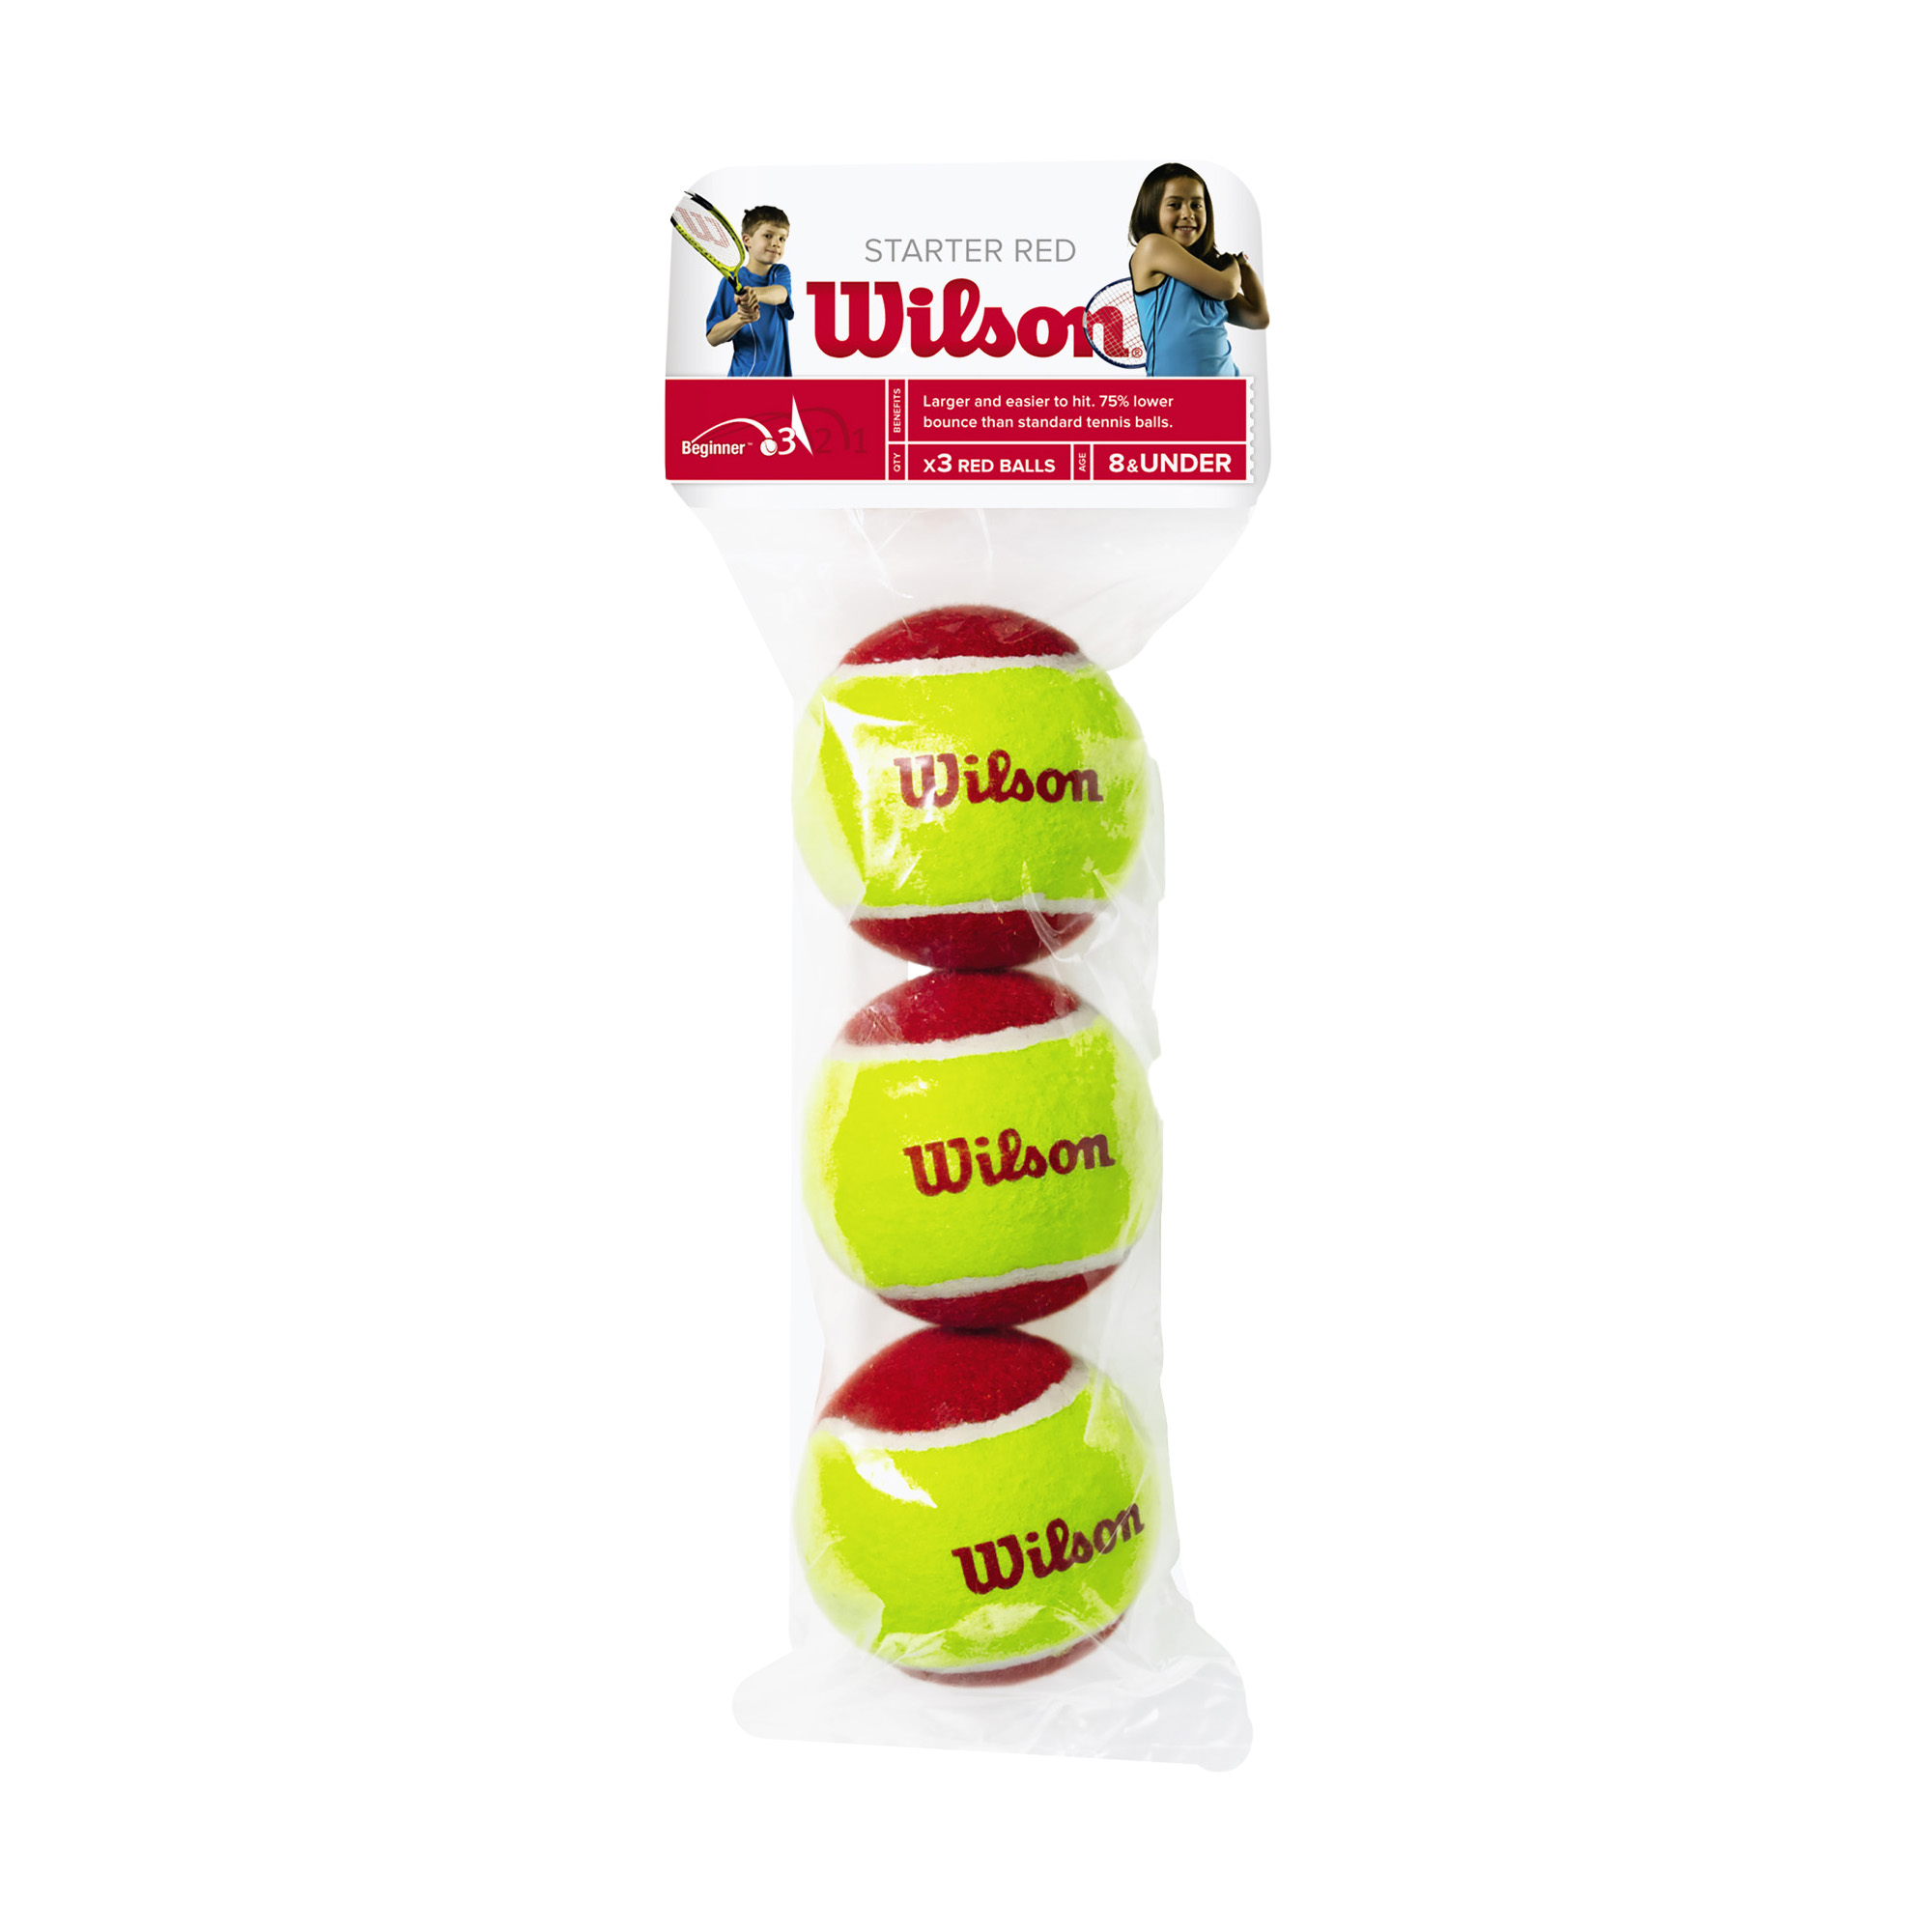 Wilson Starter Red Tball detské tenisové loptičky 3 ks žlto-červené 2000031175